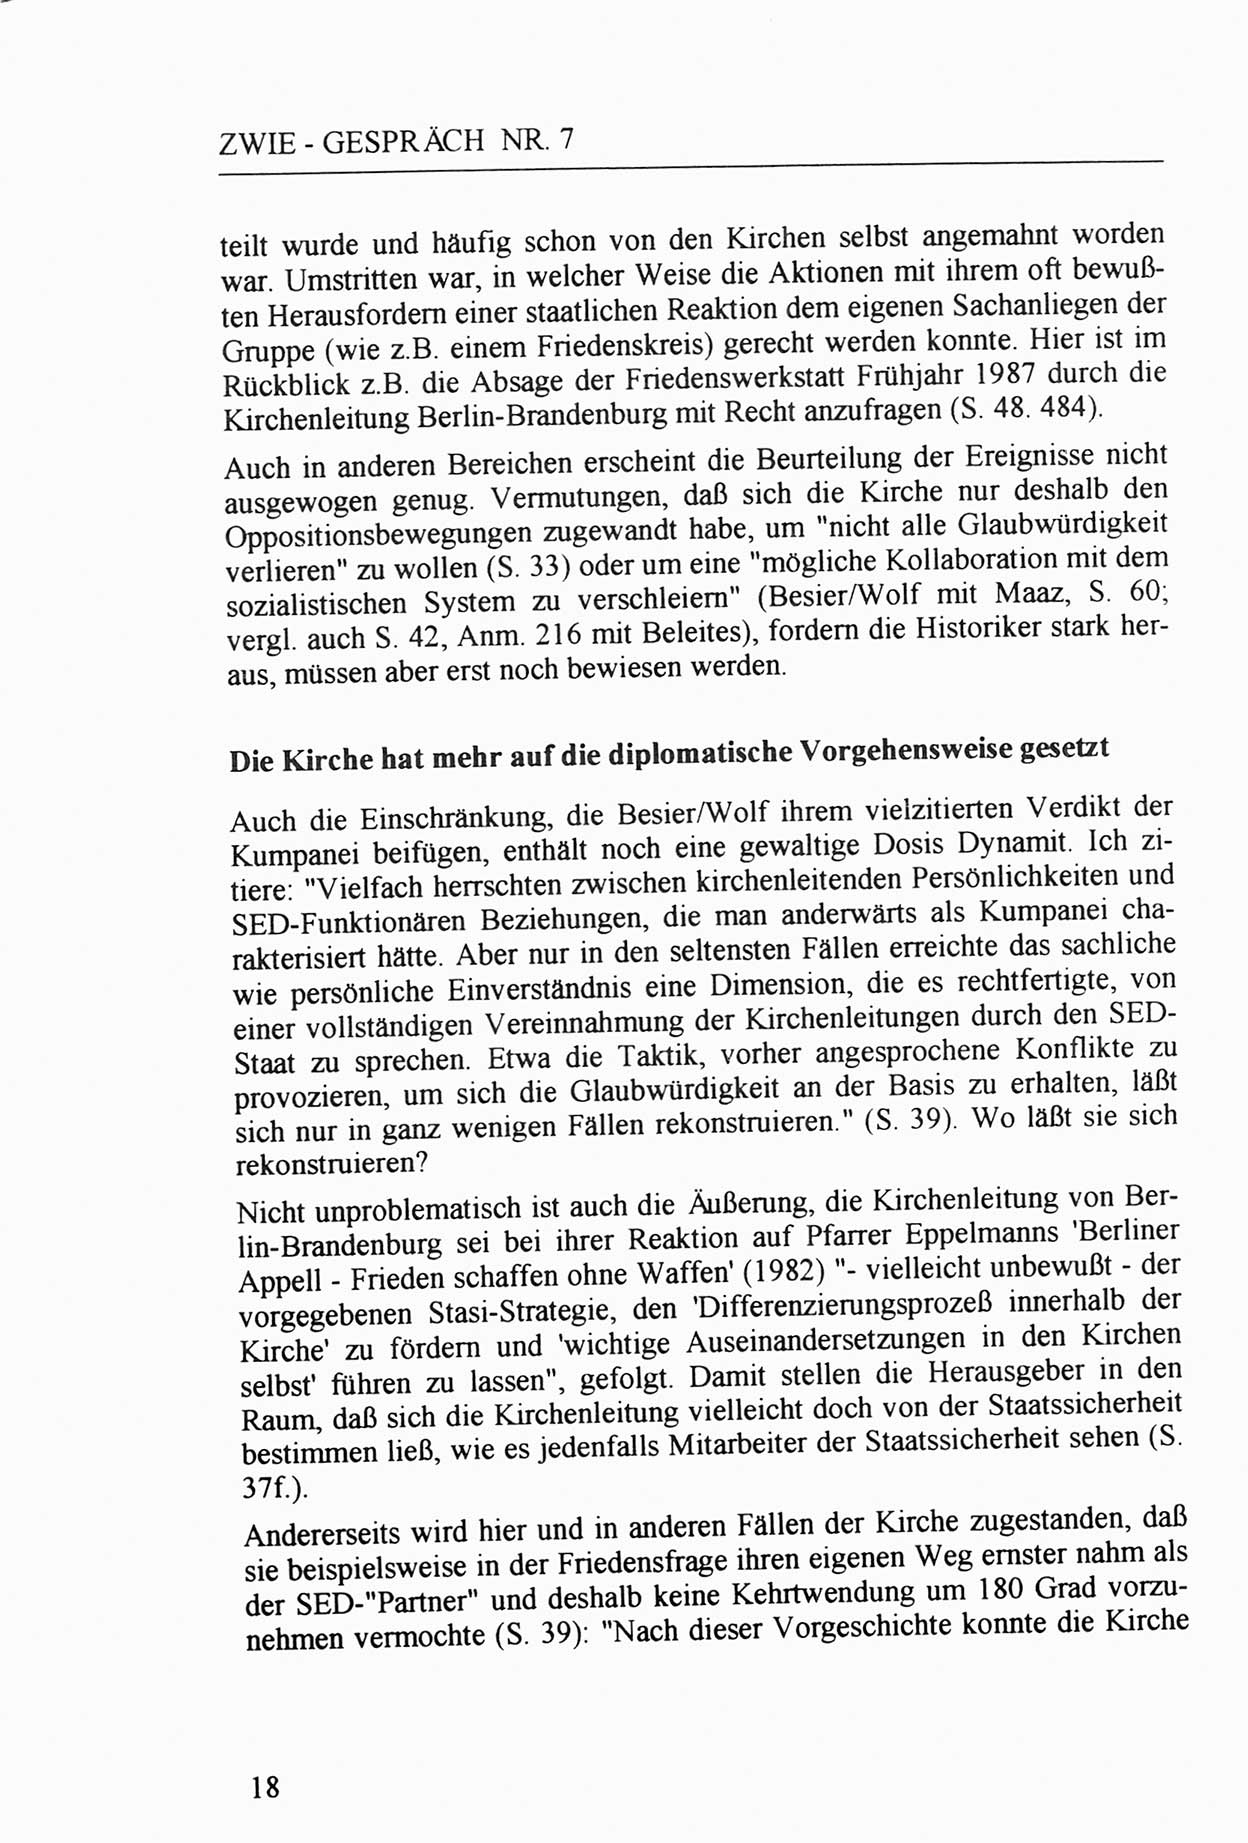 Zwie-Gespräch, Beiträge zur Aufarbeitung der Staatssicherheits-Vergangenheit [Deutsche Demokratische Republik (DDR)], Ausgabe Nr. 7, Berlin 1992, Seite 18 (Zwie-Gespr. Ausg. 7 1992, S. 18)